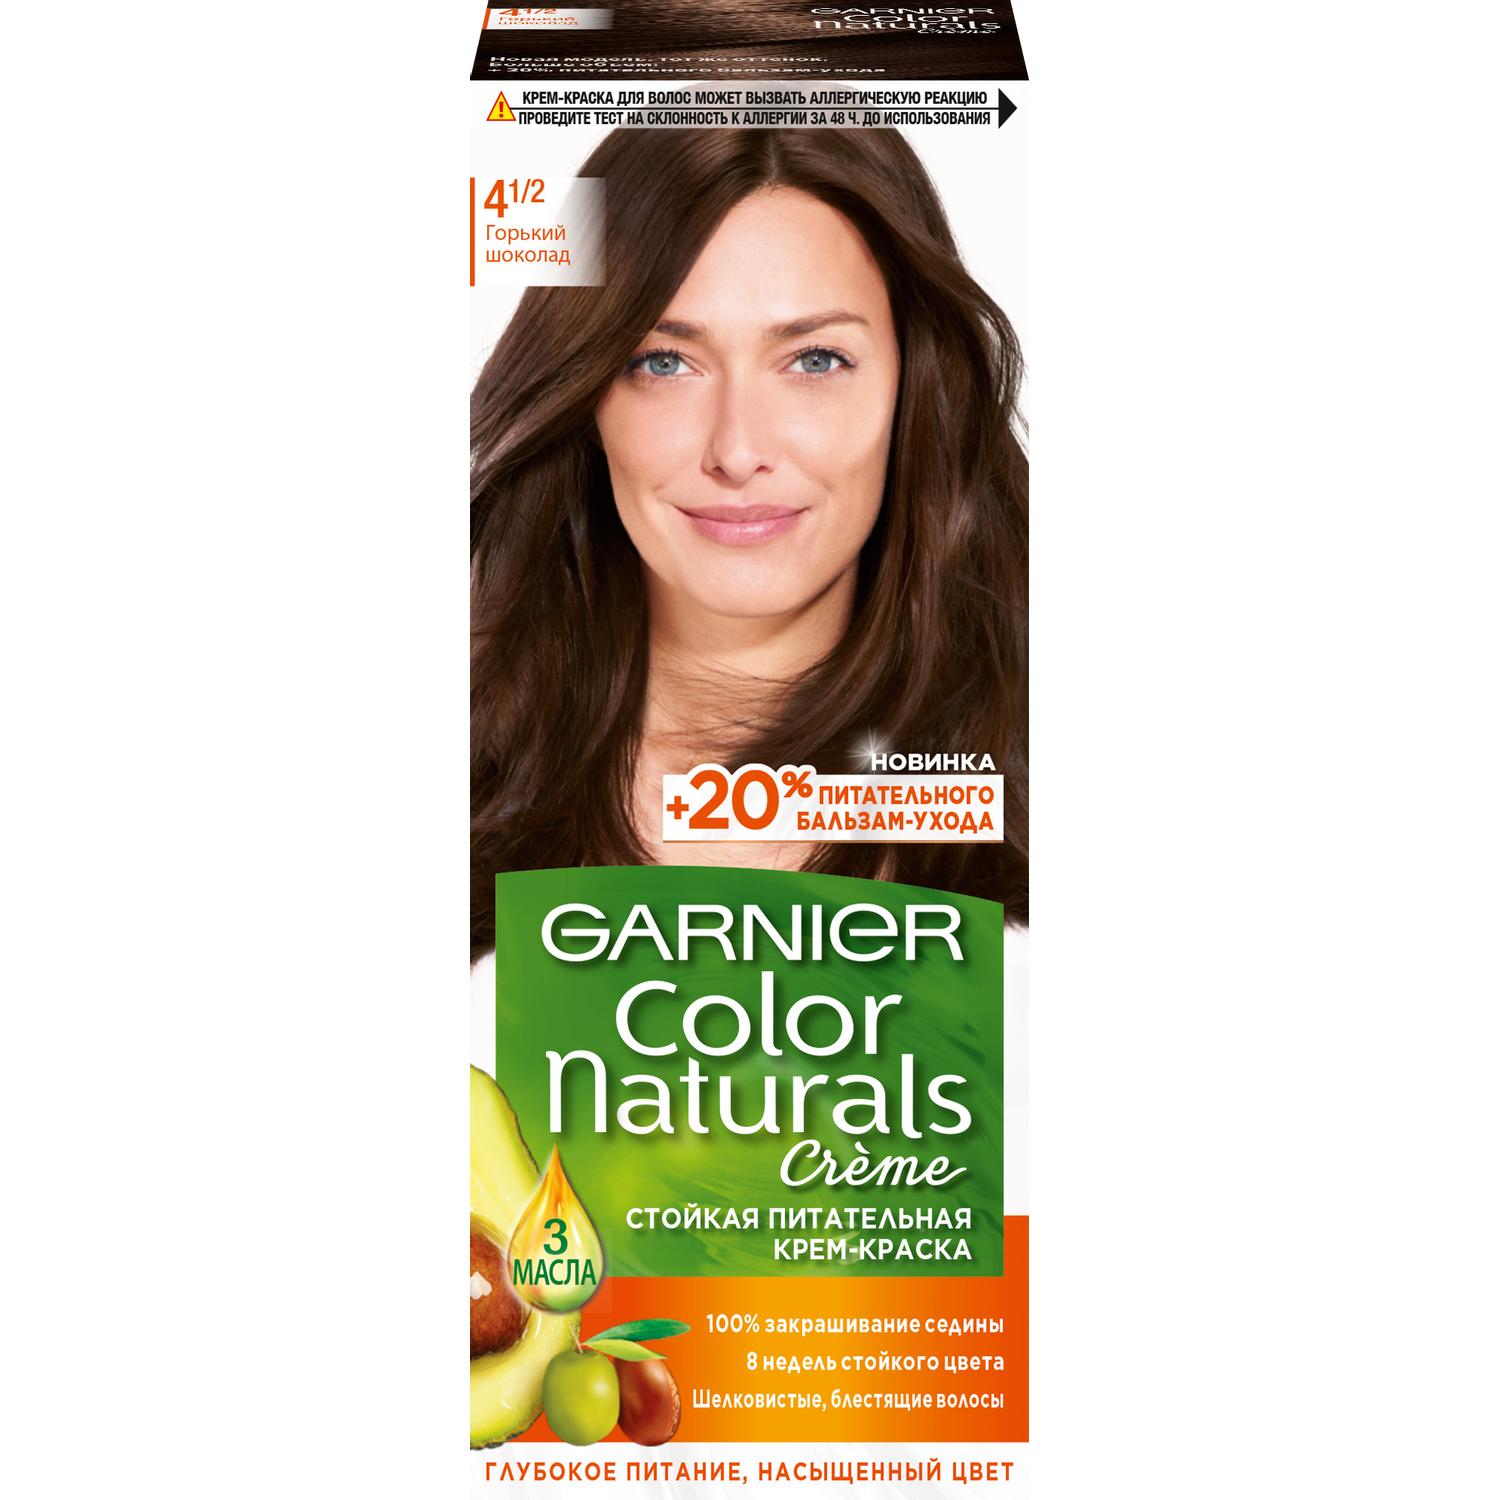 фото Крем-краска для волос garnier color naturals 4.1/2 горький шоколад 110 мл